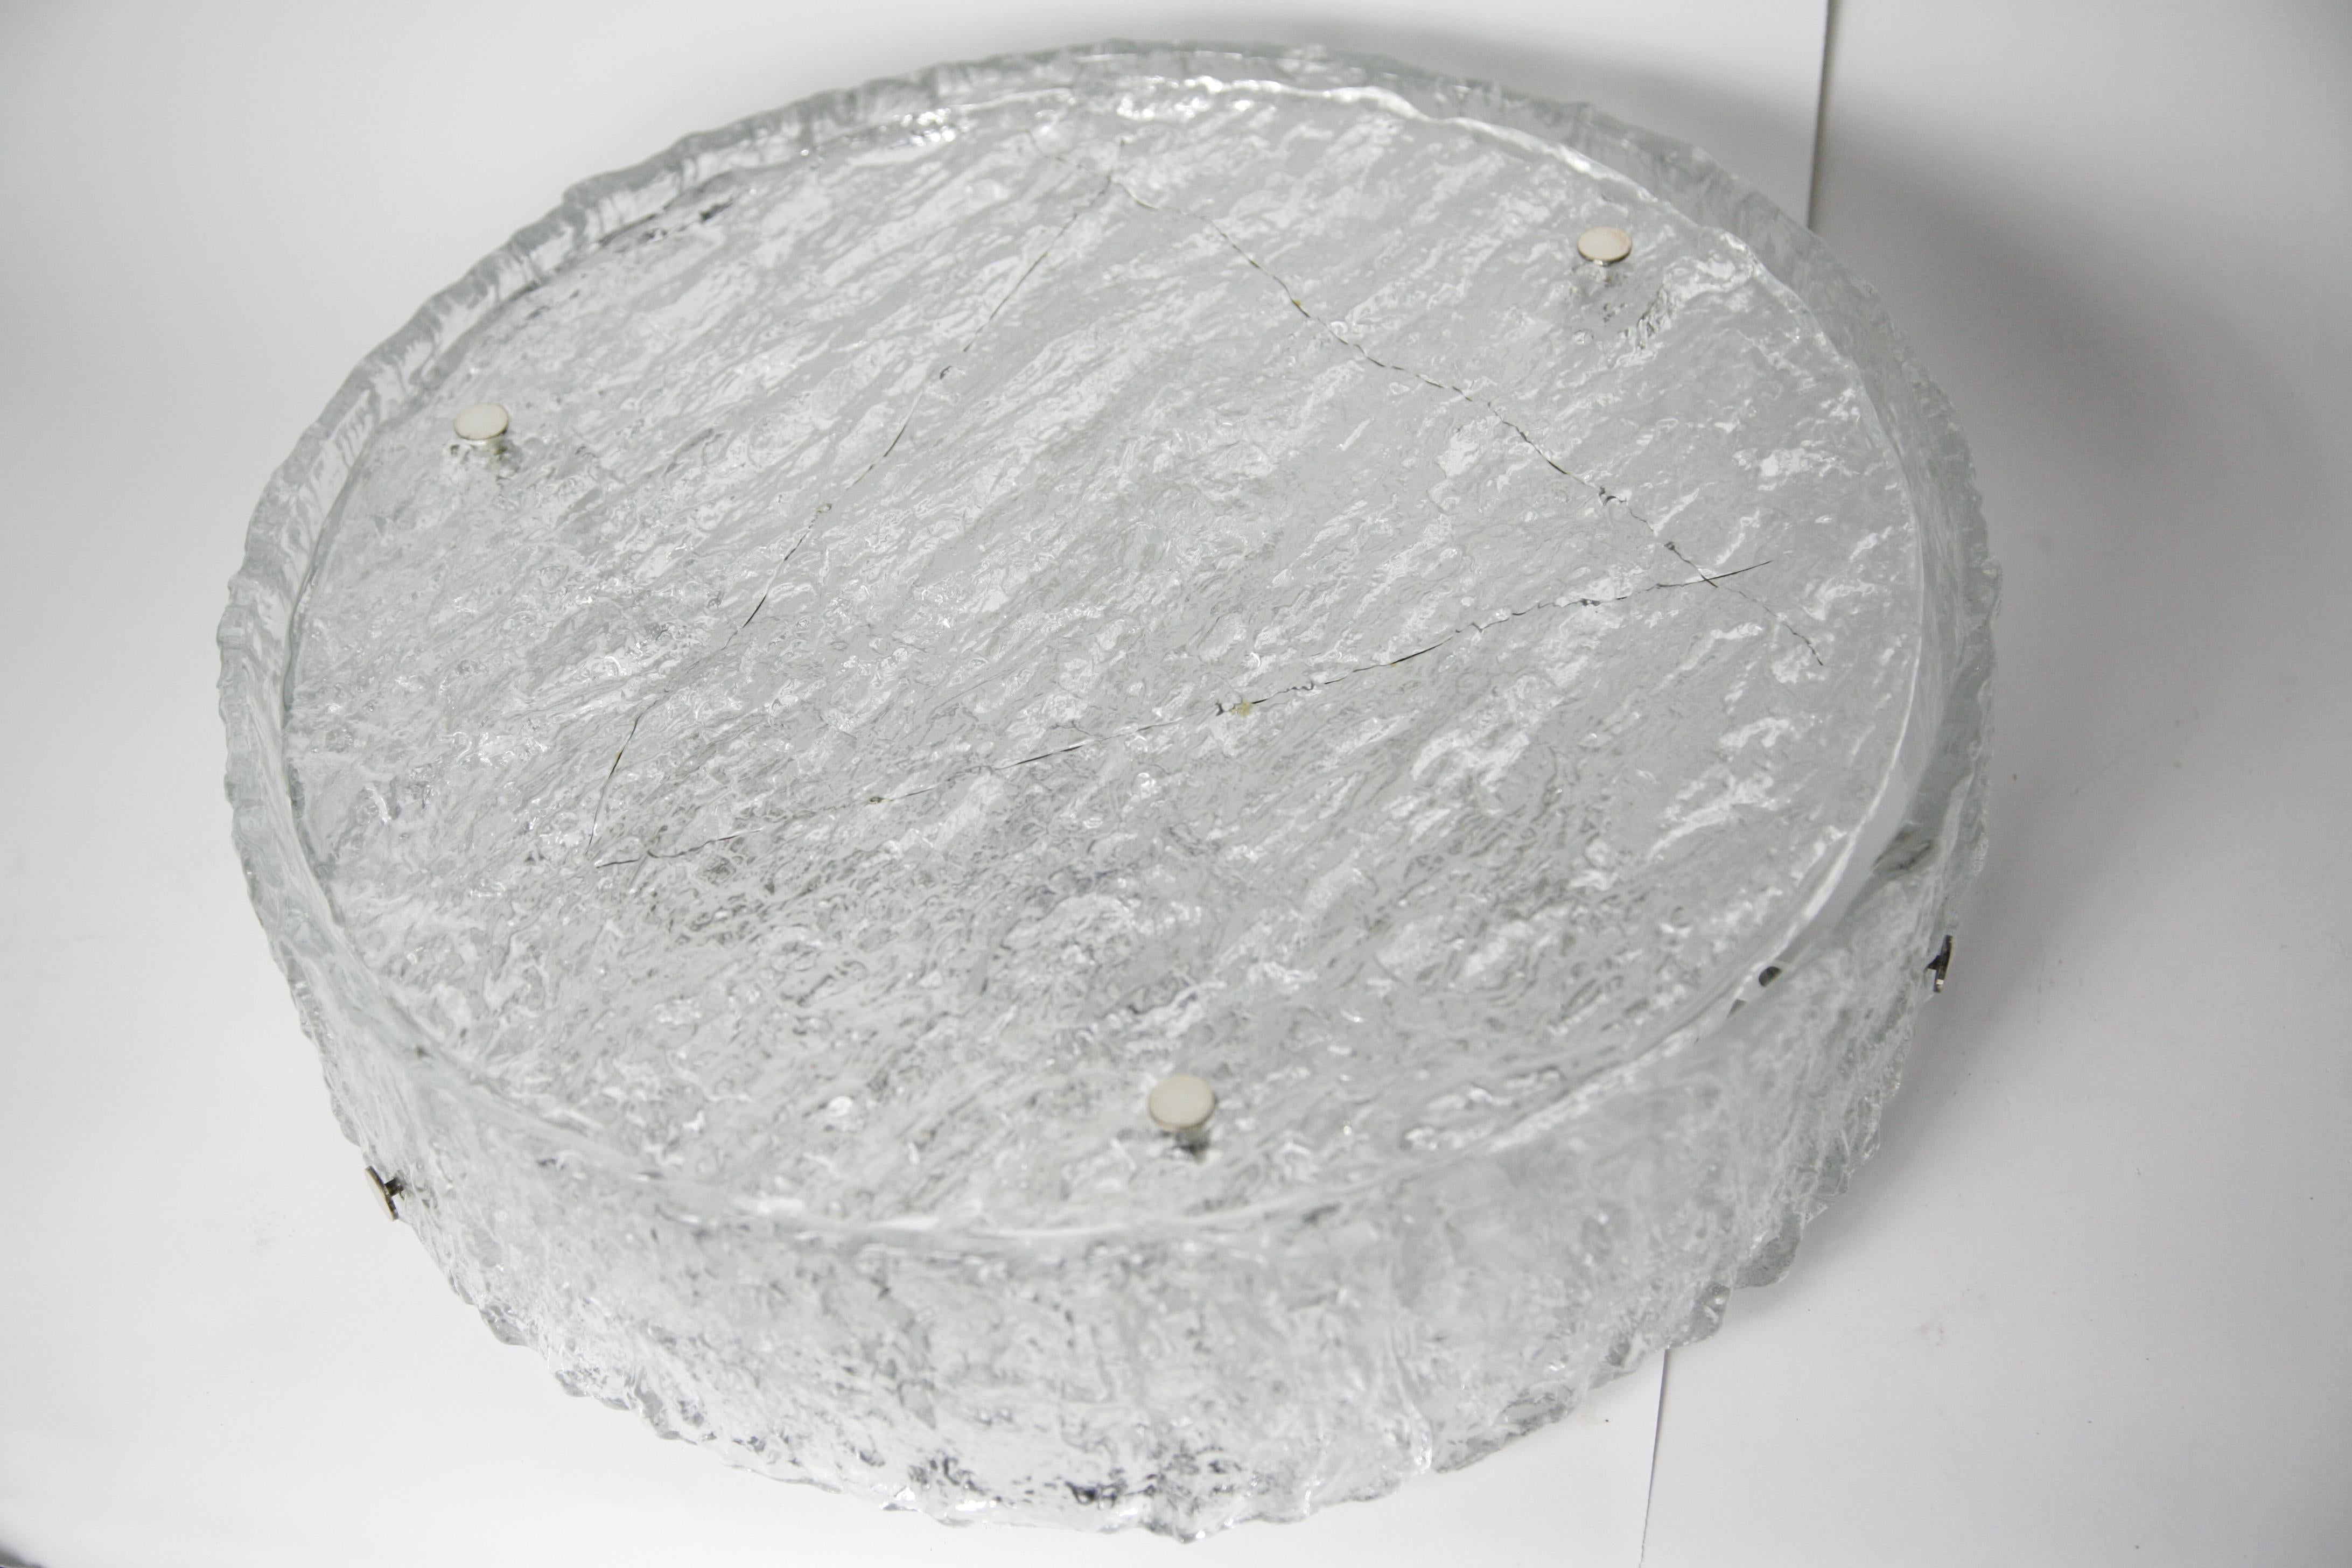 Glass flush mount von Kaiser, Deutschland 1960s ein runder Diffusor trommelförmigen Glas, das auf der Außenseite wie ein gewelltes Eis Ozean sechs verchromte Kreuzblumen, vier europäischen Steckdosen auf einem weißen Metallrahmen strukturiert